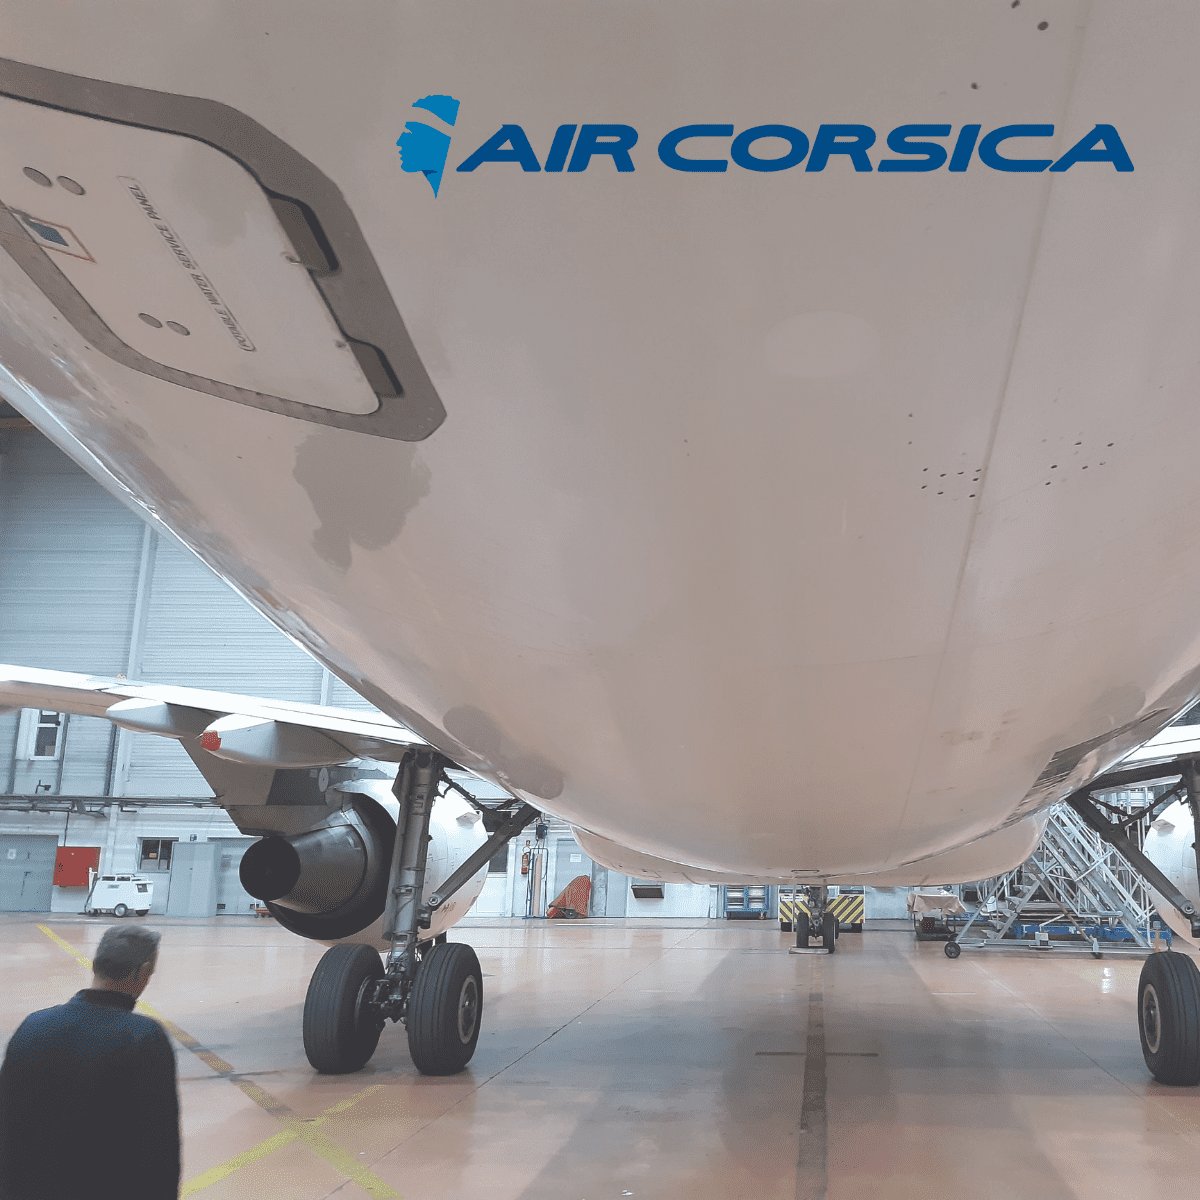 Essais sur des Boeing B747 et des Airbus A320 pour tester notre solution de reparation rapide de bléssure de peinture sur avion, permettant de maximiser et de faciliter les maintenance MRO